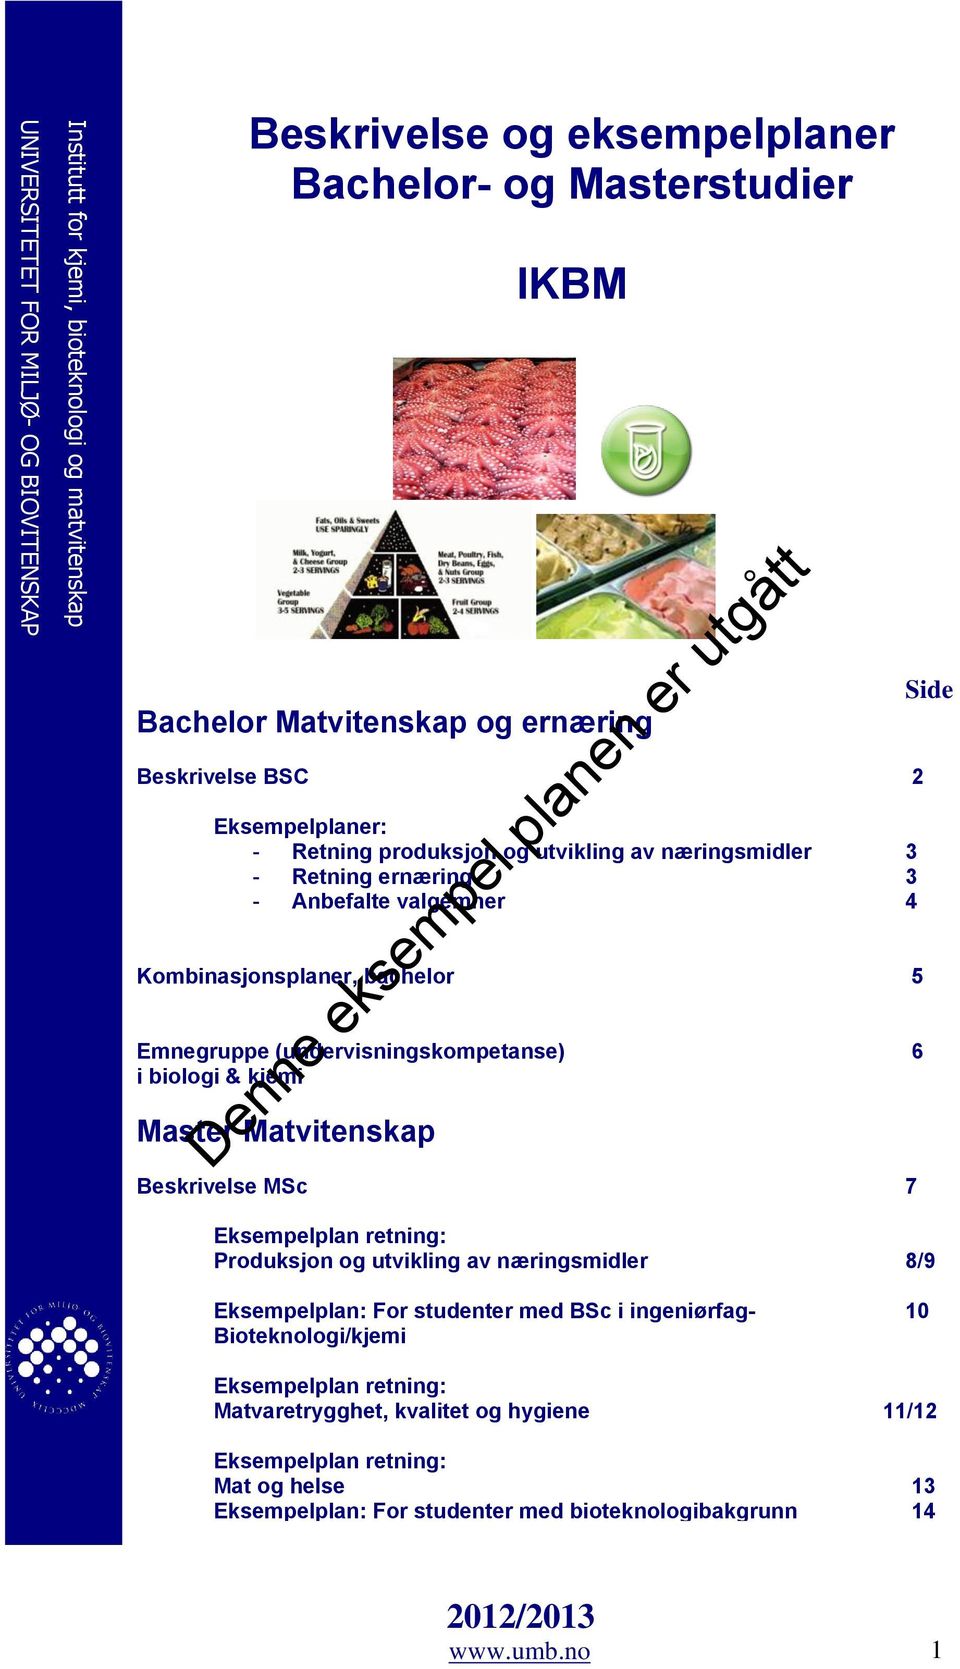 (undervisningskompetanse) 6 i biologi & kjemi Master Matvitenskap Beskrivelse MSc 7 Side Eksempelplan retning: Produksjon og utvikling av næringsmidler 8/9 Eksempelplan: For studenter med BSc